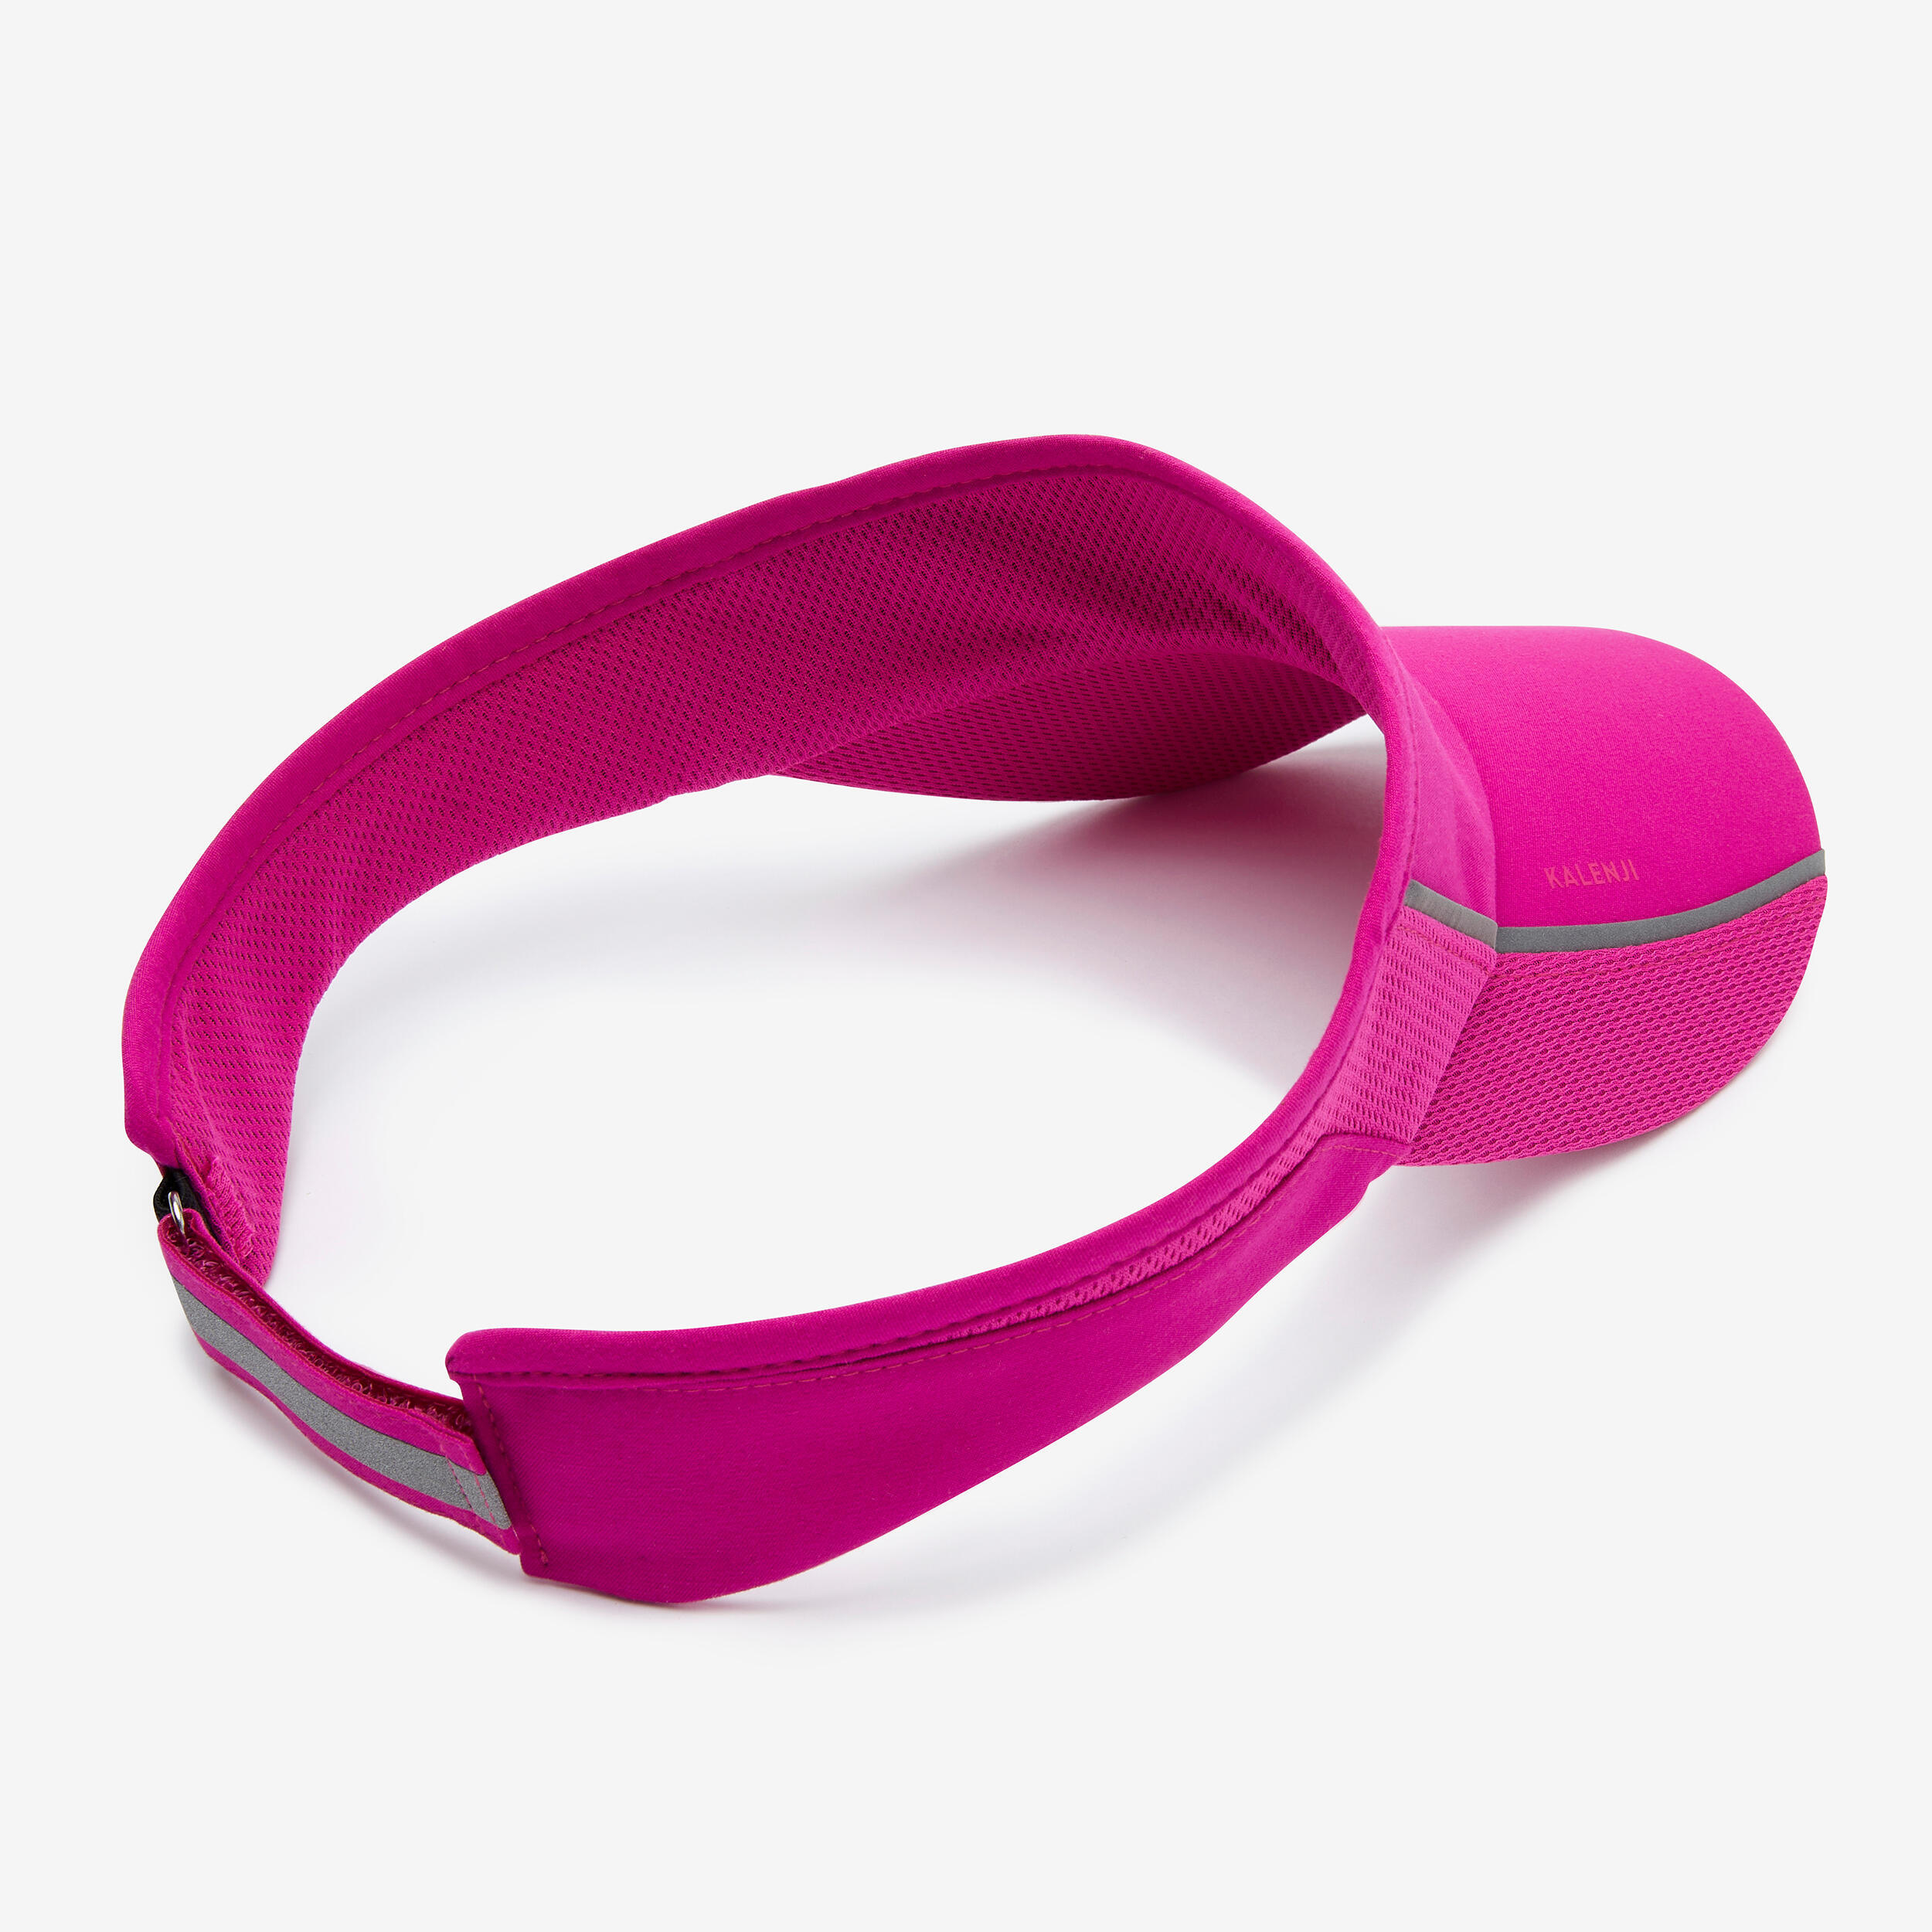 Unisex Running Visor - Kiprun Adjustable Pink Fuchsia 4/5